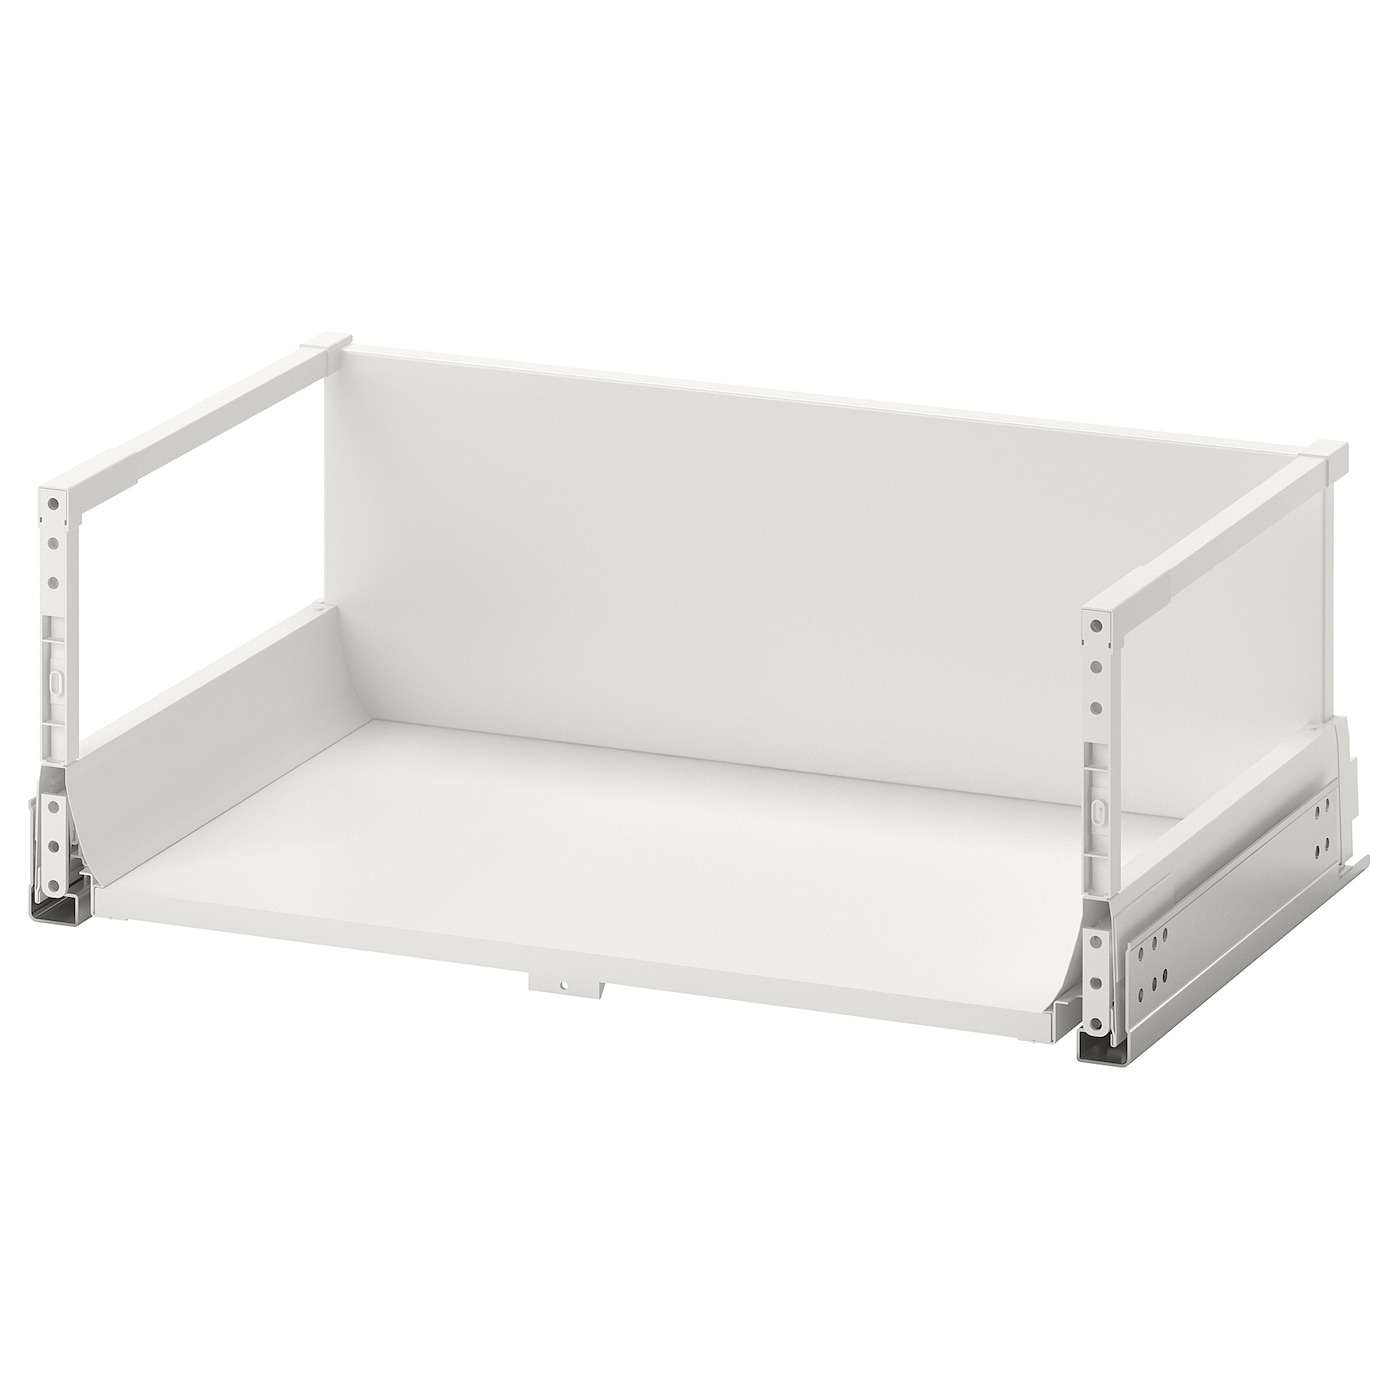 Ящик высокий - MAXIMERA IKEA/ МАКСИМЕРА ИКЕА, 56,4х21,2 см, белый